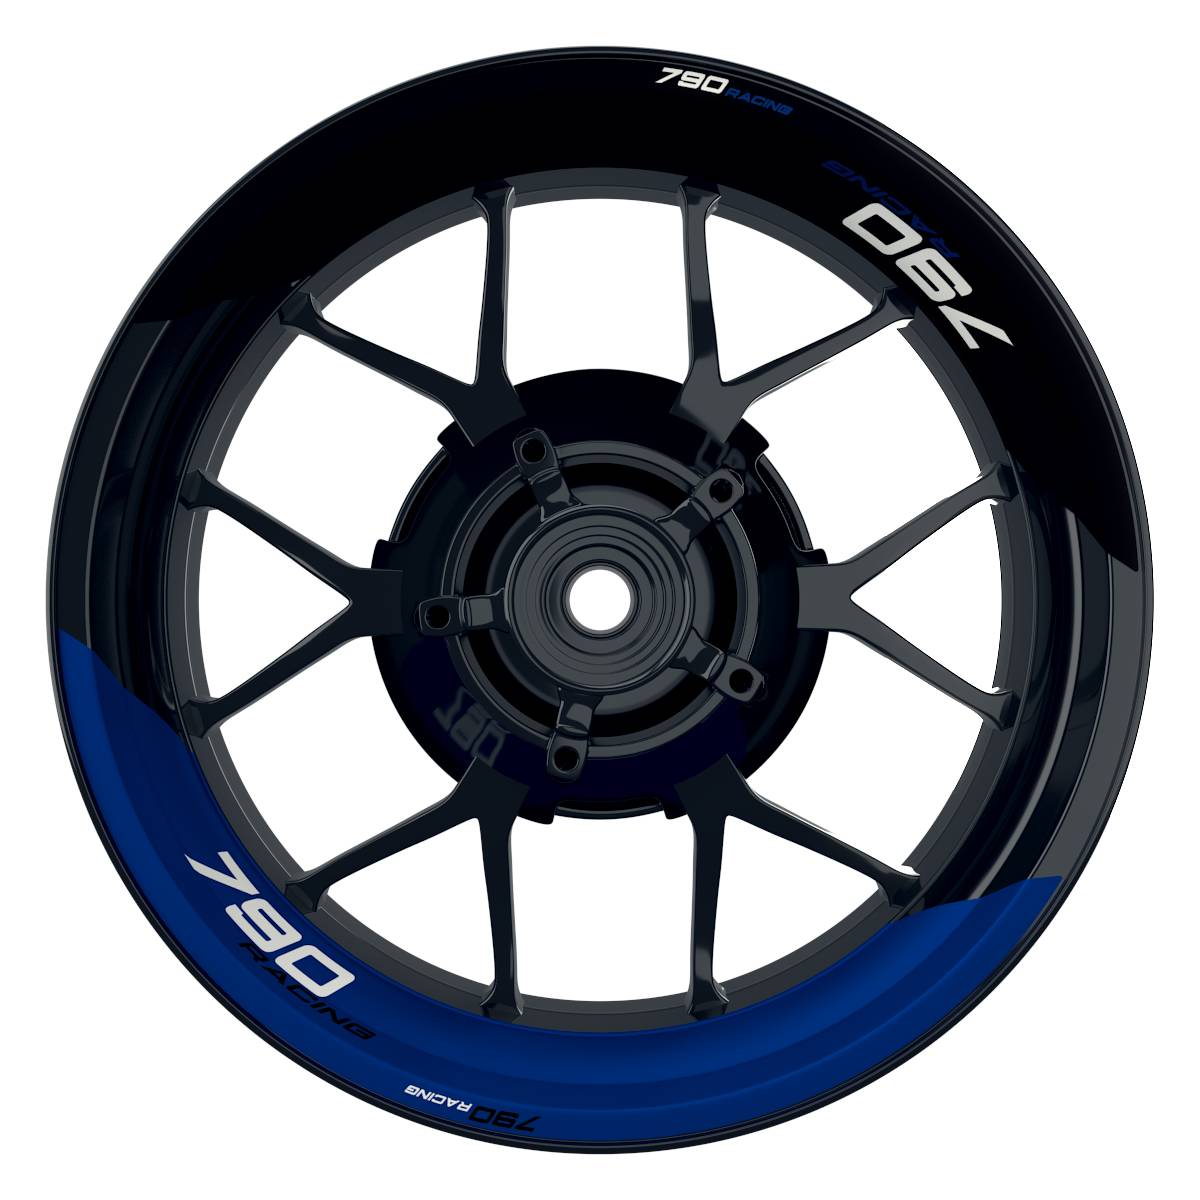 KTM Racing 790 halb halb schwarz blau Frontansicht